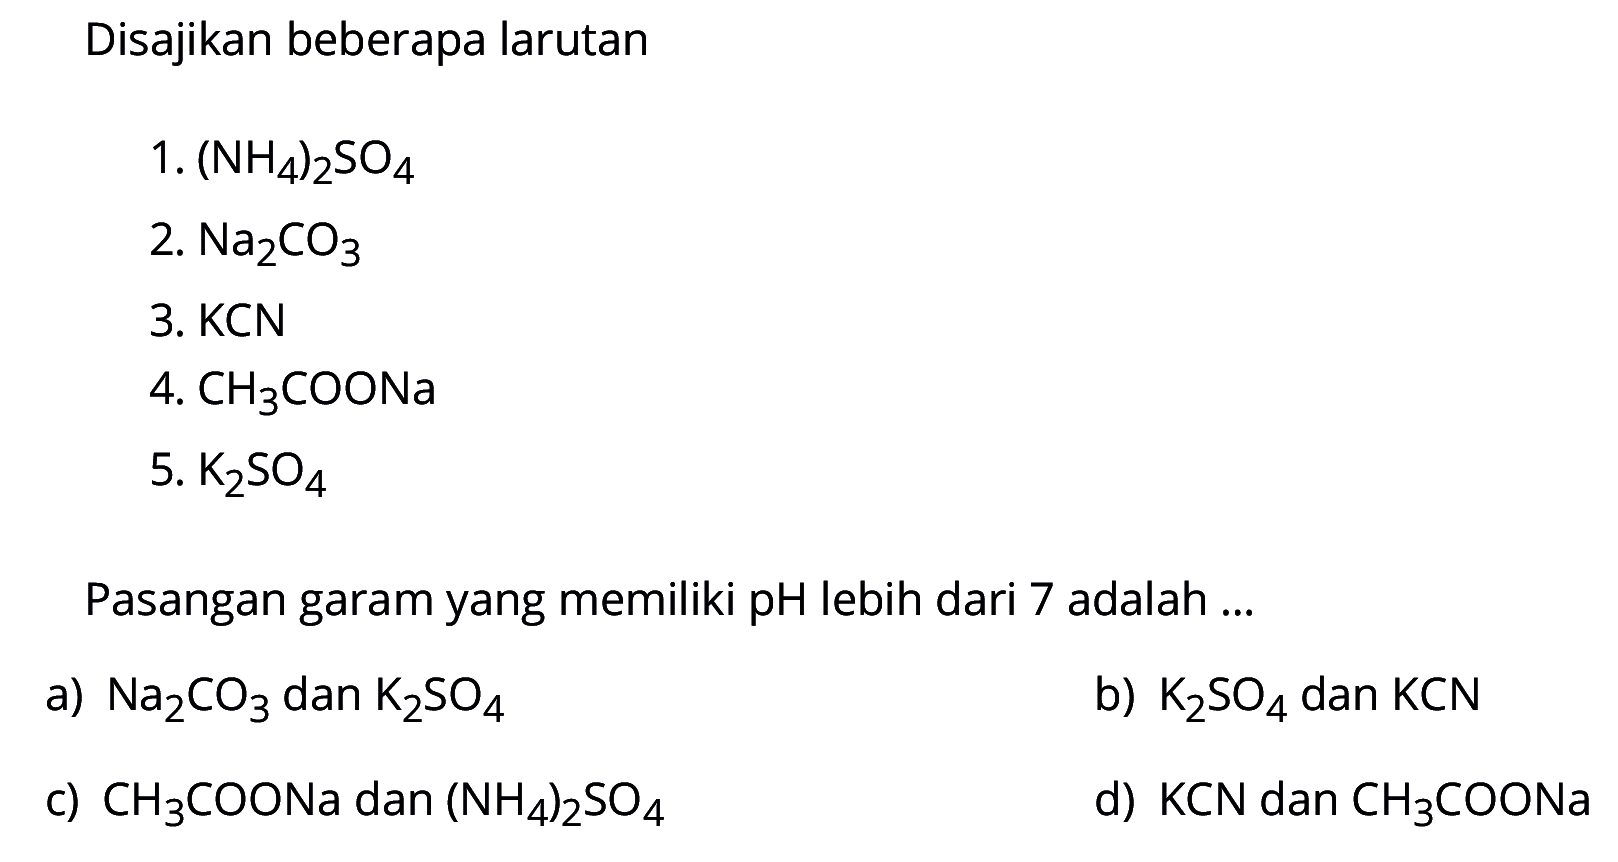 Disajikan beberapa larutan1.  (NH4)2 SO4 2.  Na2 CO3 3. KCN4.  CH3  COONa5.  K2 SO4 Pasangan garam yang memiliki pH lebih dari 7 adalah ...a)  Na2 CO3  dan  K2 SO4 b)  K2 SO4  dan  KCN c)  CH3 COONa  dan  (NH4)2 SO4 d)  KCN  dan  CH3 COONa 